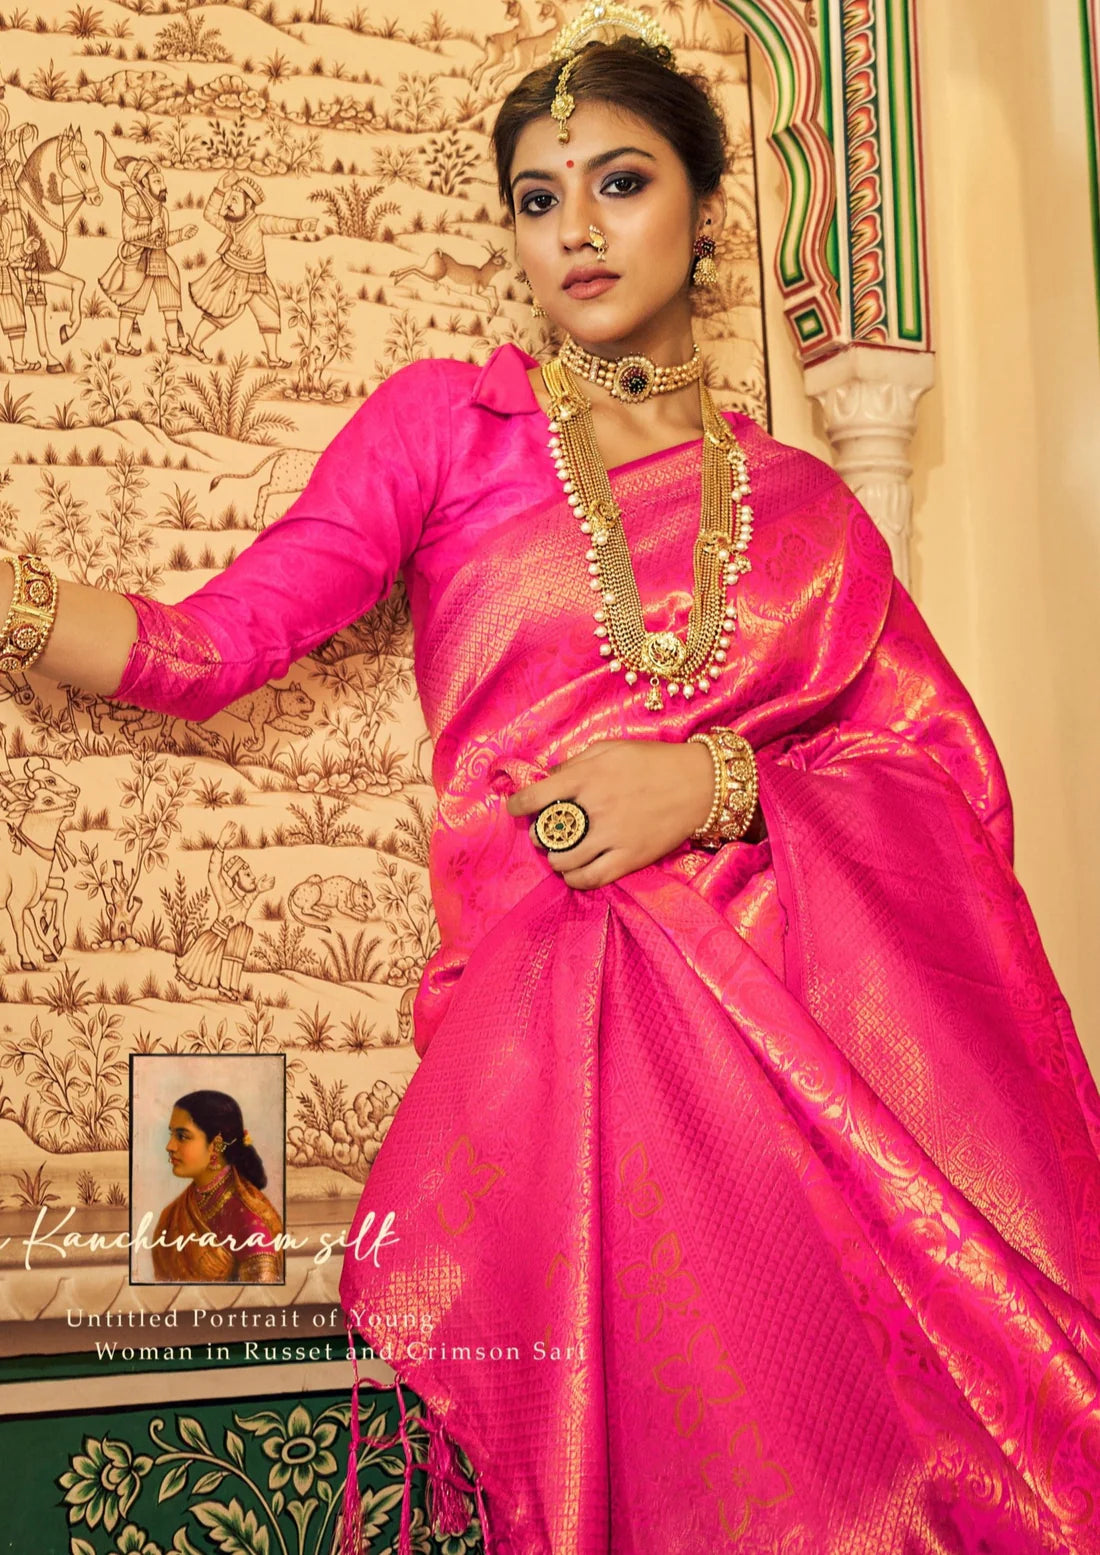 Handloom silk hot pink kanjeevaram bridal saree online shopping with price usa.